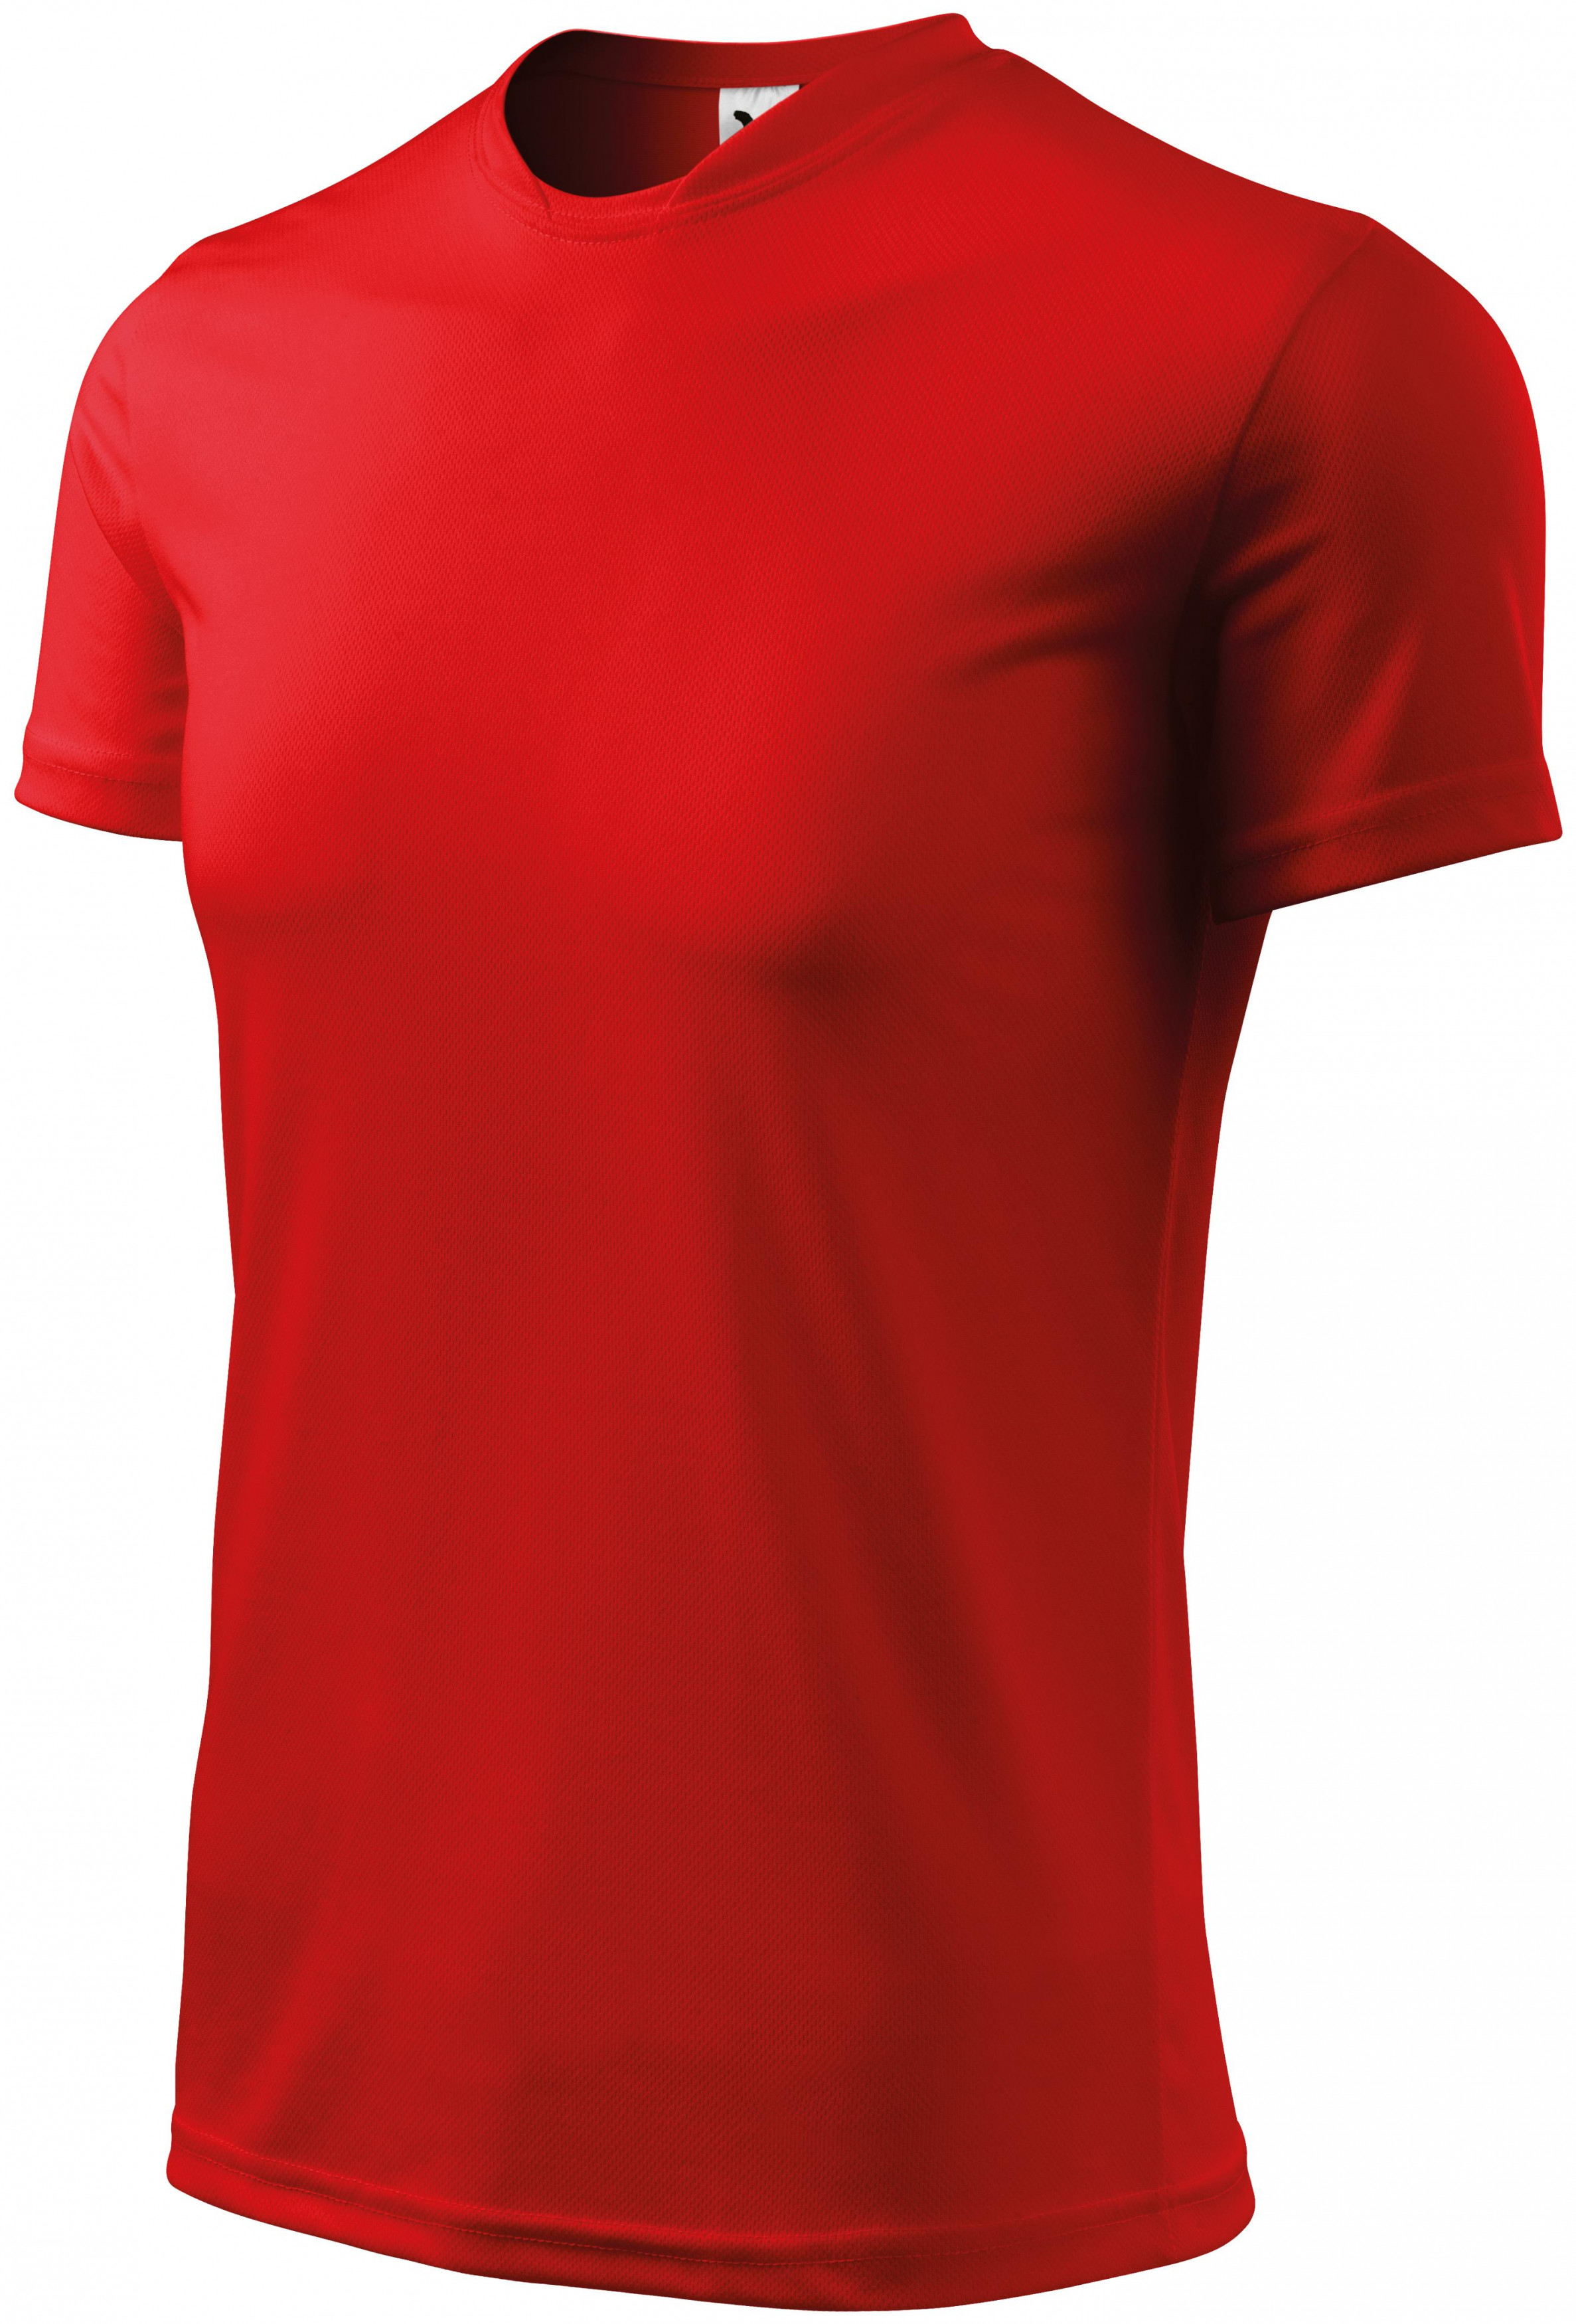 Tričko s asymetrickým priekrčníkom, červená, XL